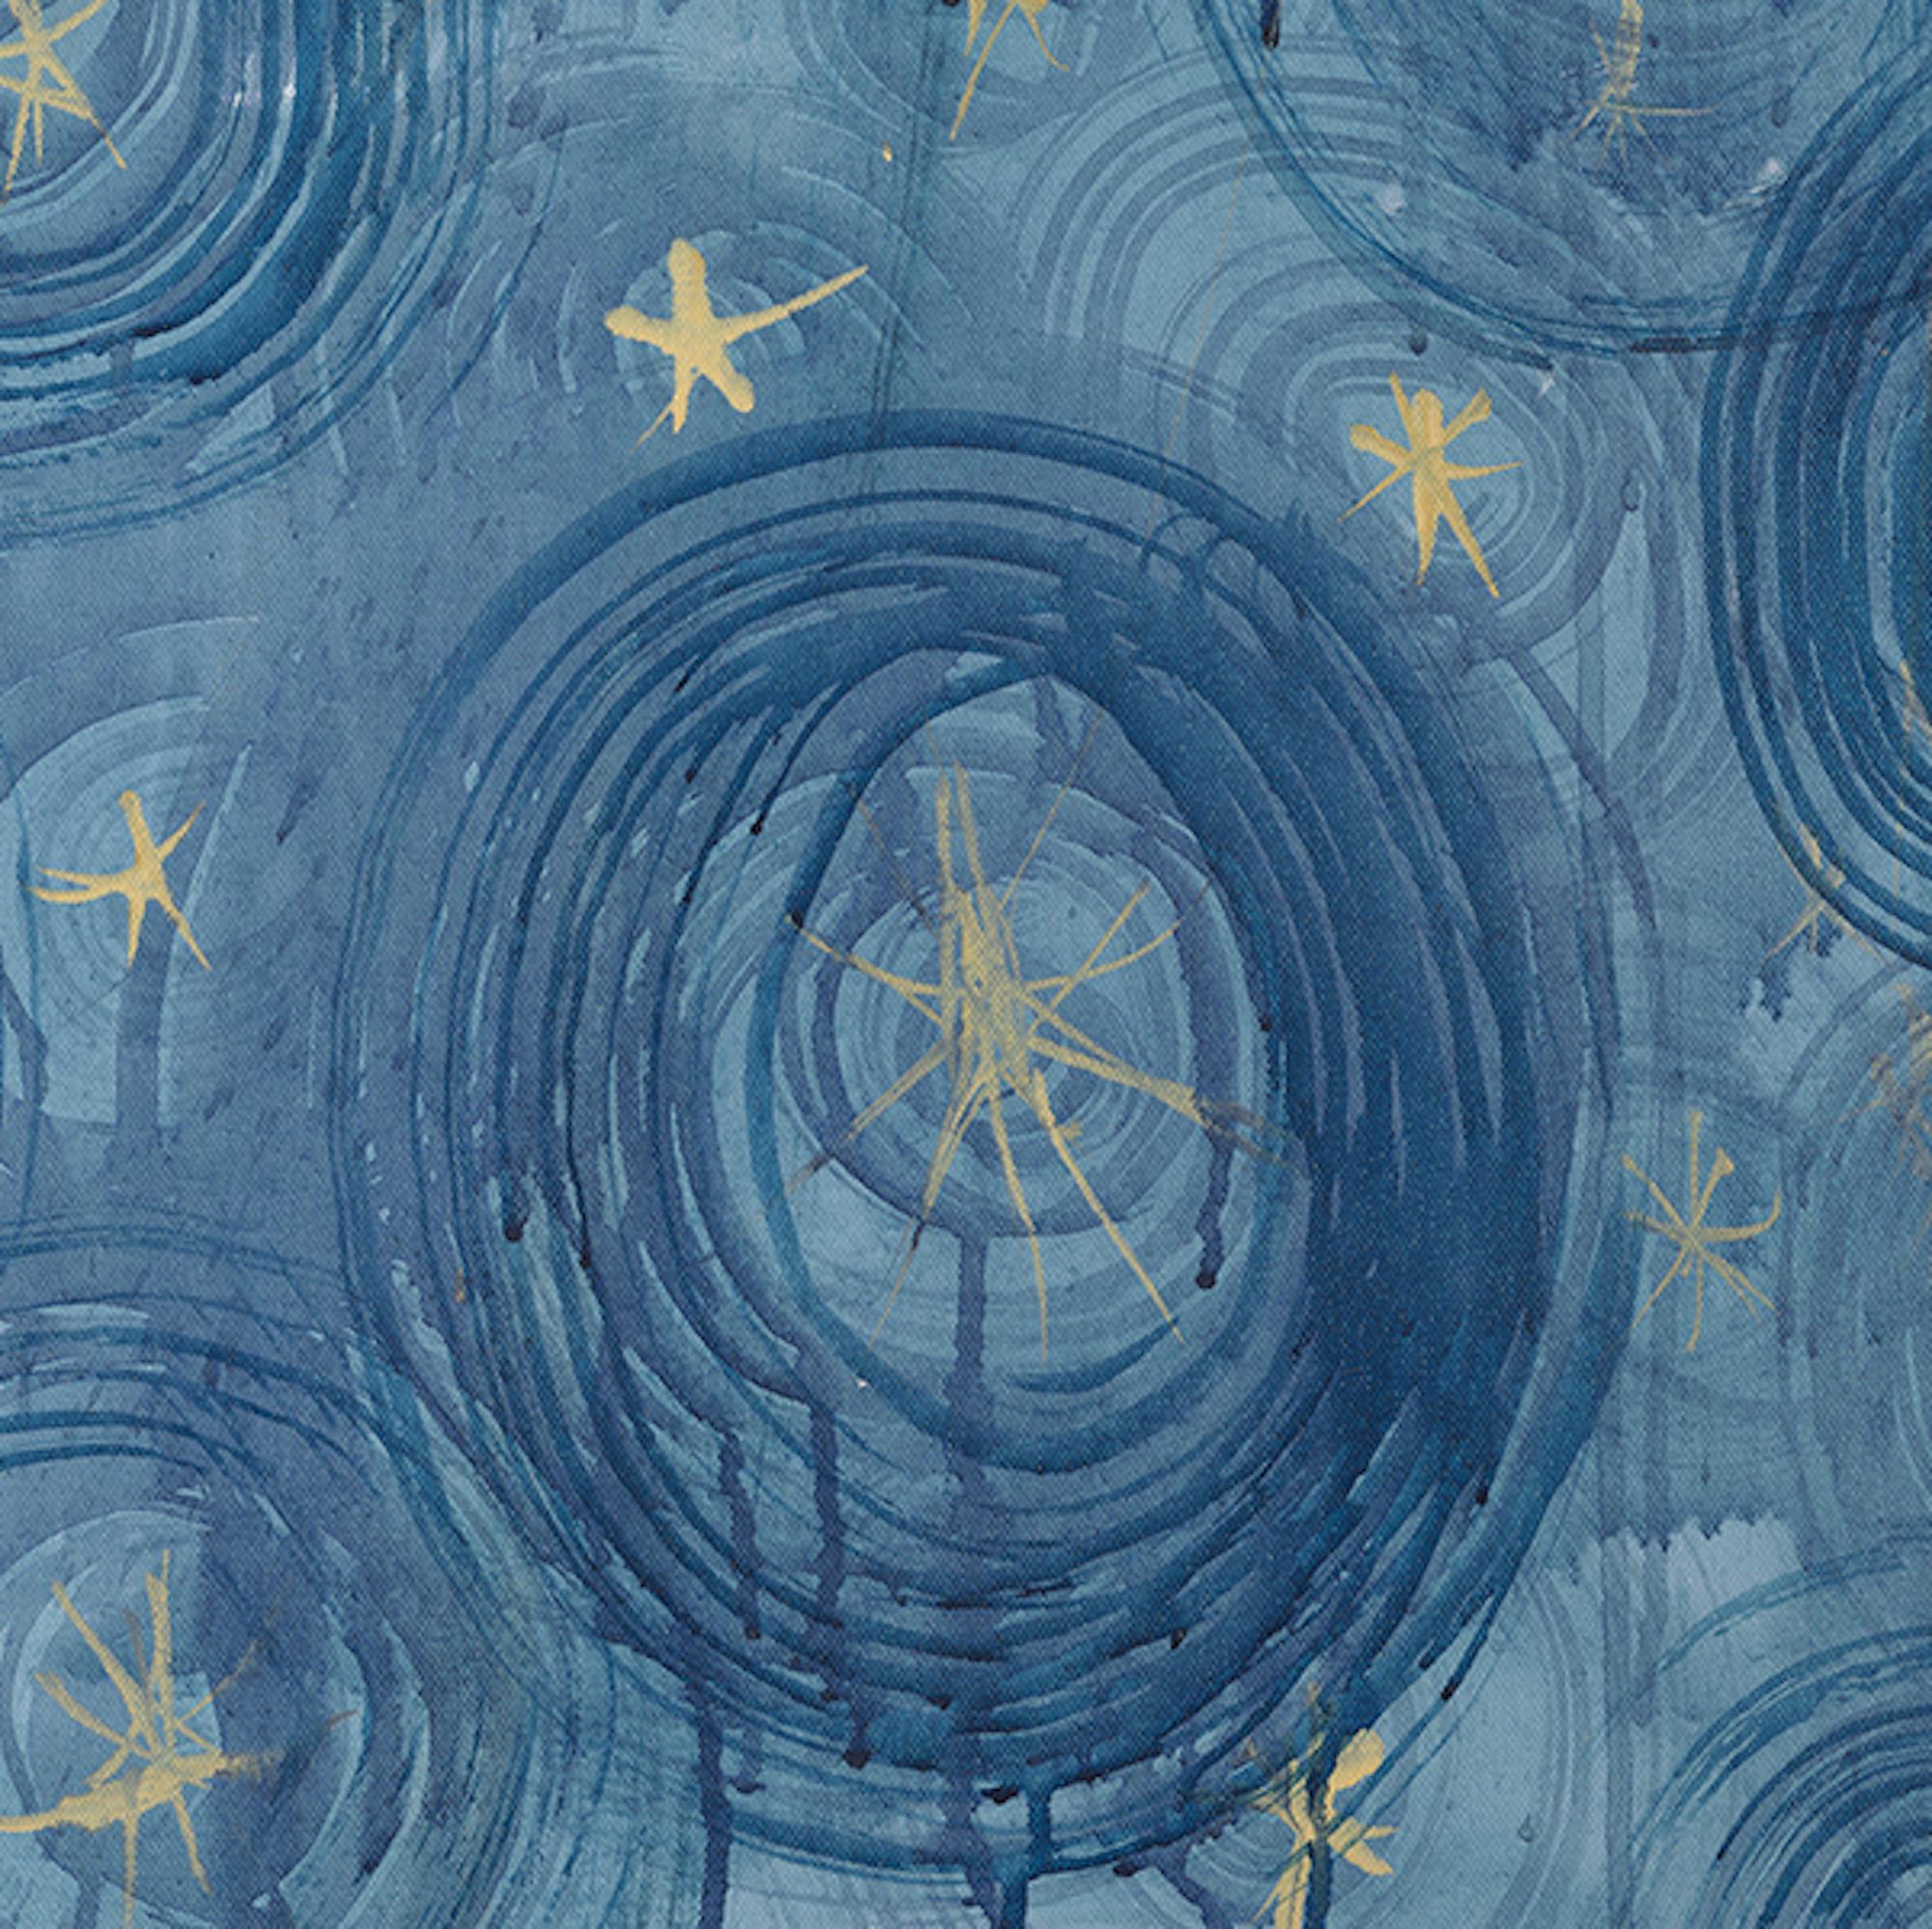  Abstraktes Celestial-Gemälde in Mischtechnik auf Leinwand, Blau, Gold, Weiß (Zeitgenössisch), Painting, von Alex K. Mason